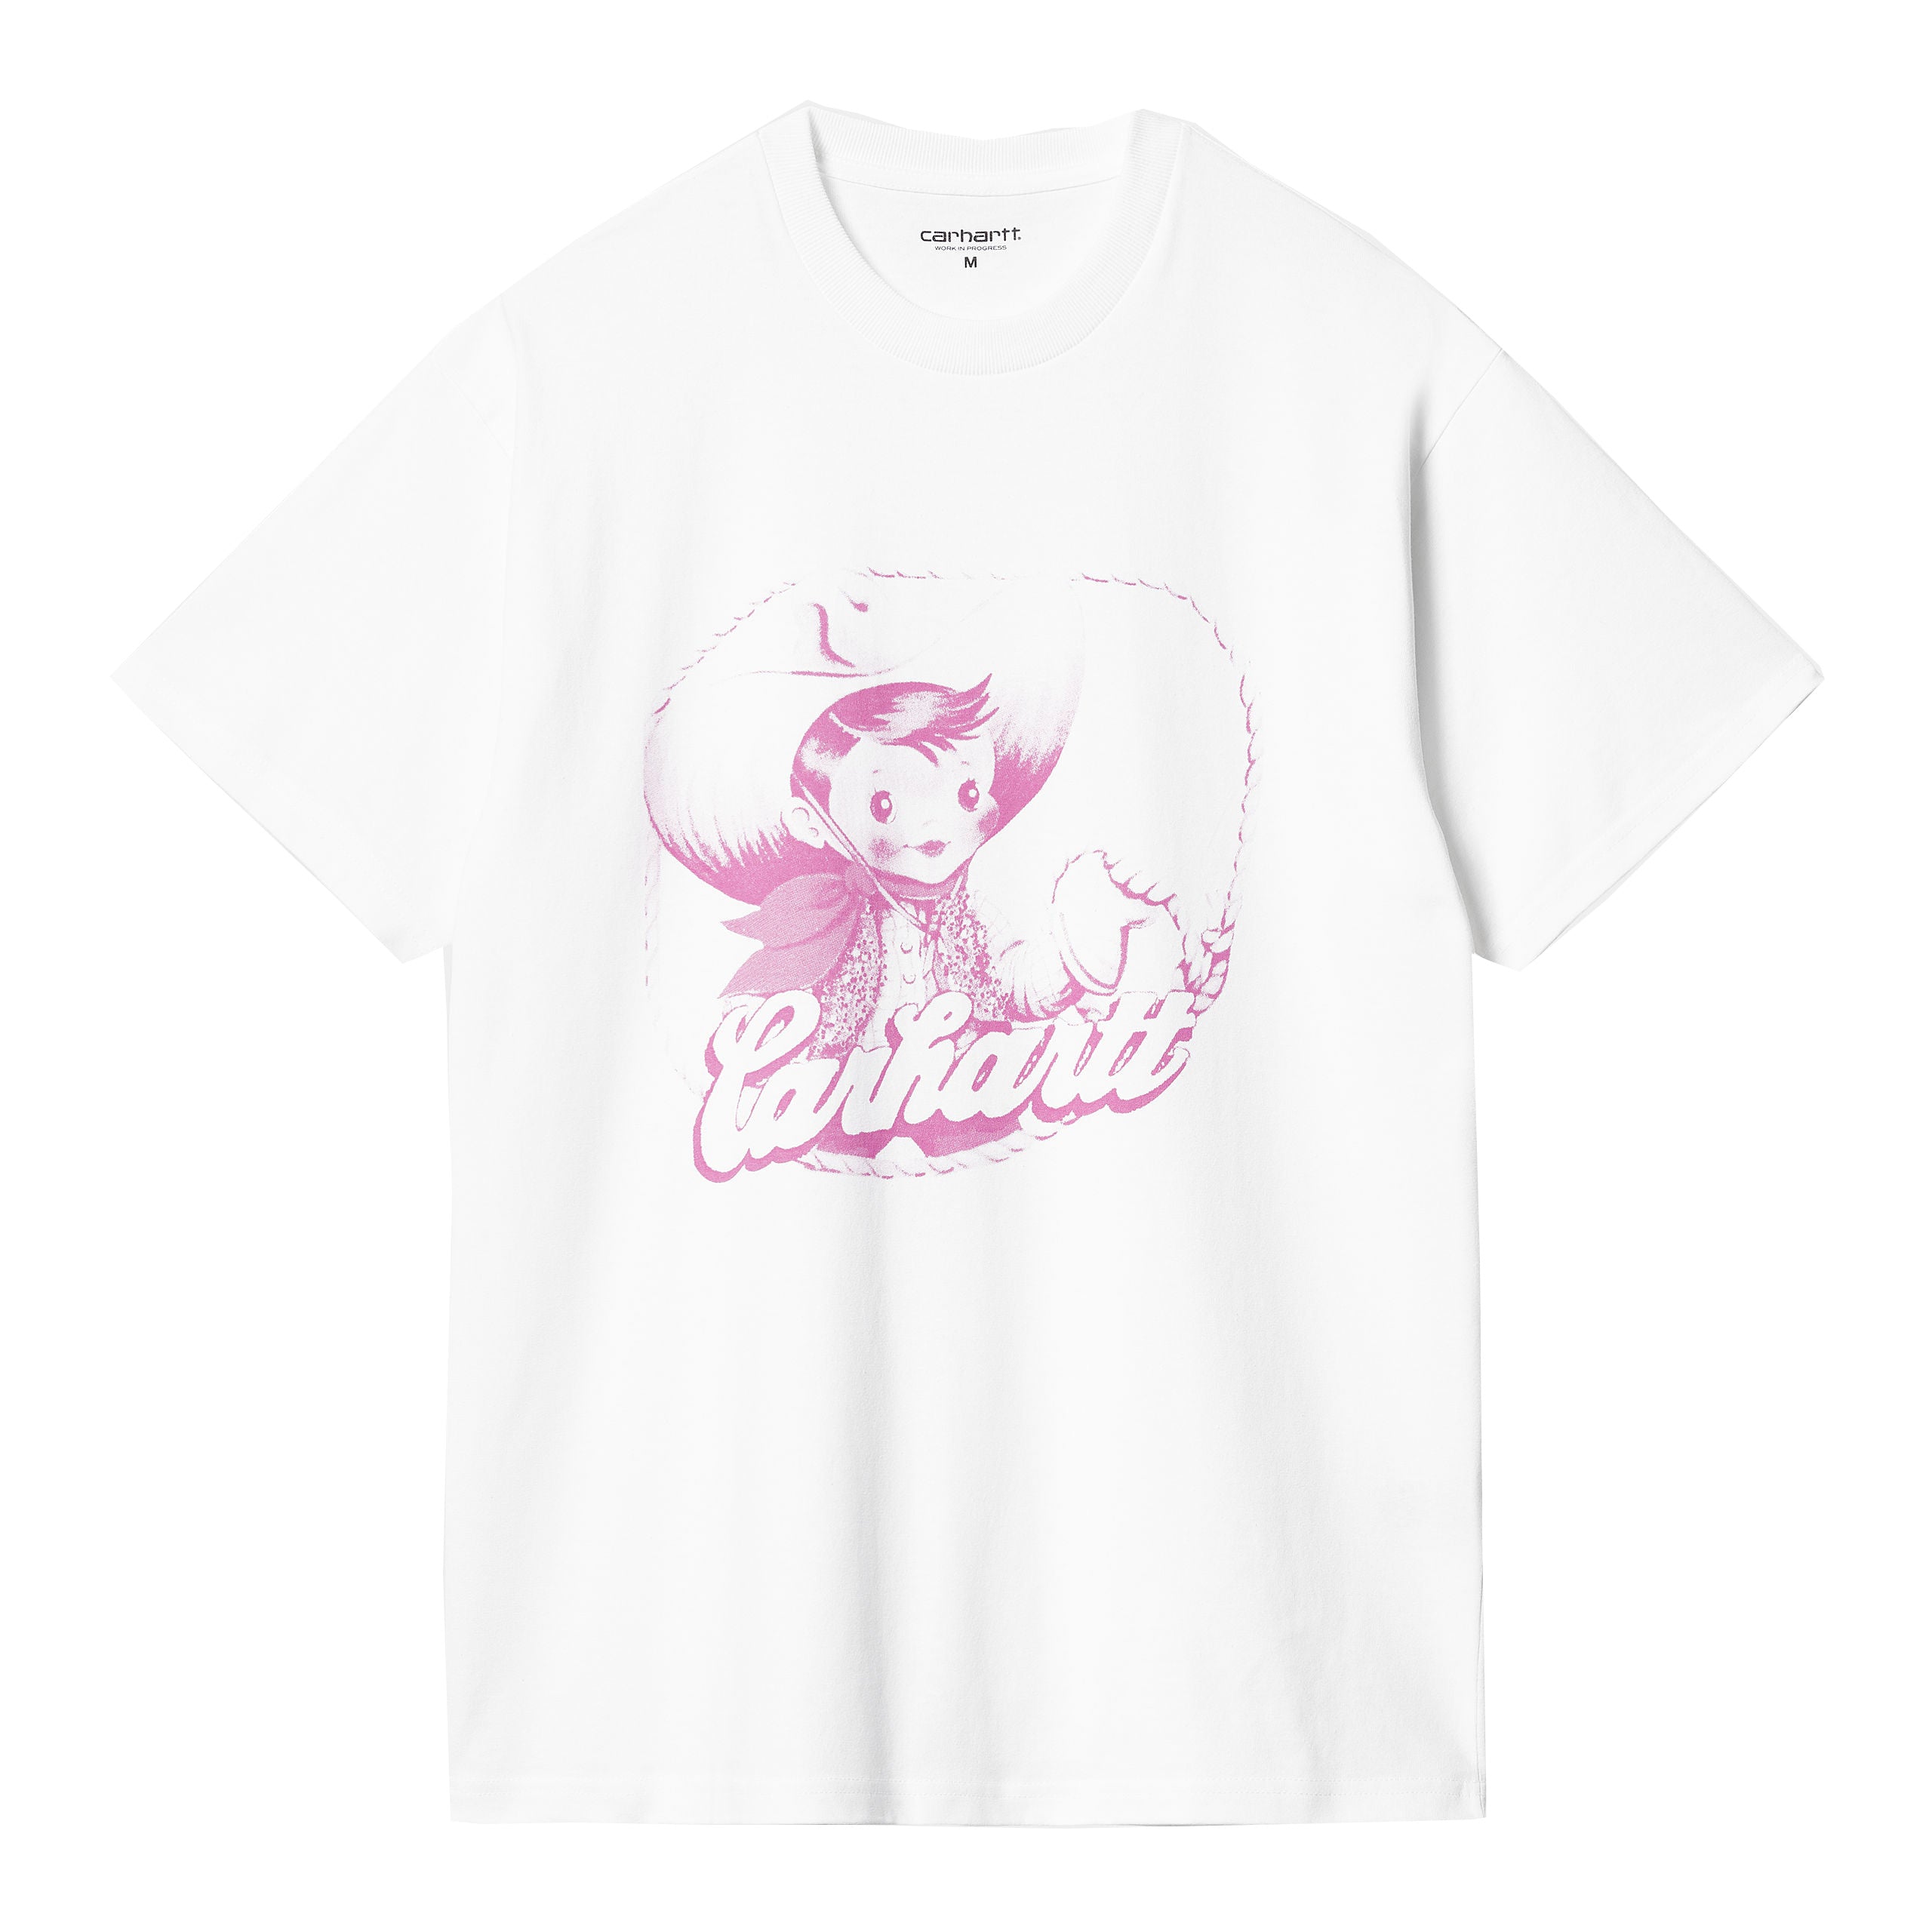 Carhartt WIP Buddy T-shirt - White/Pink